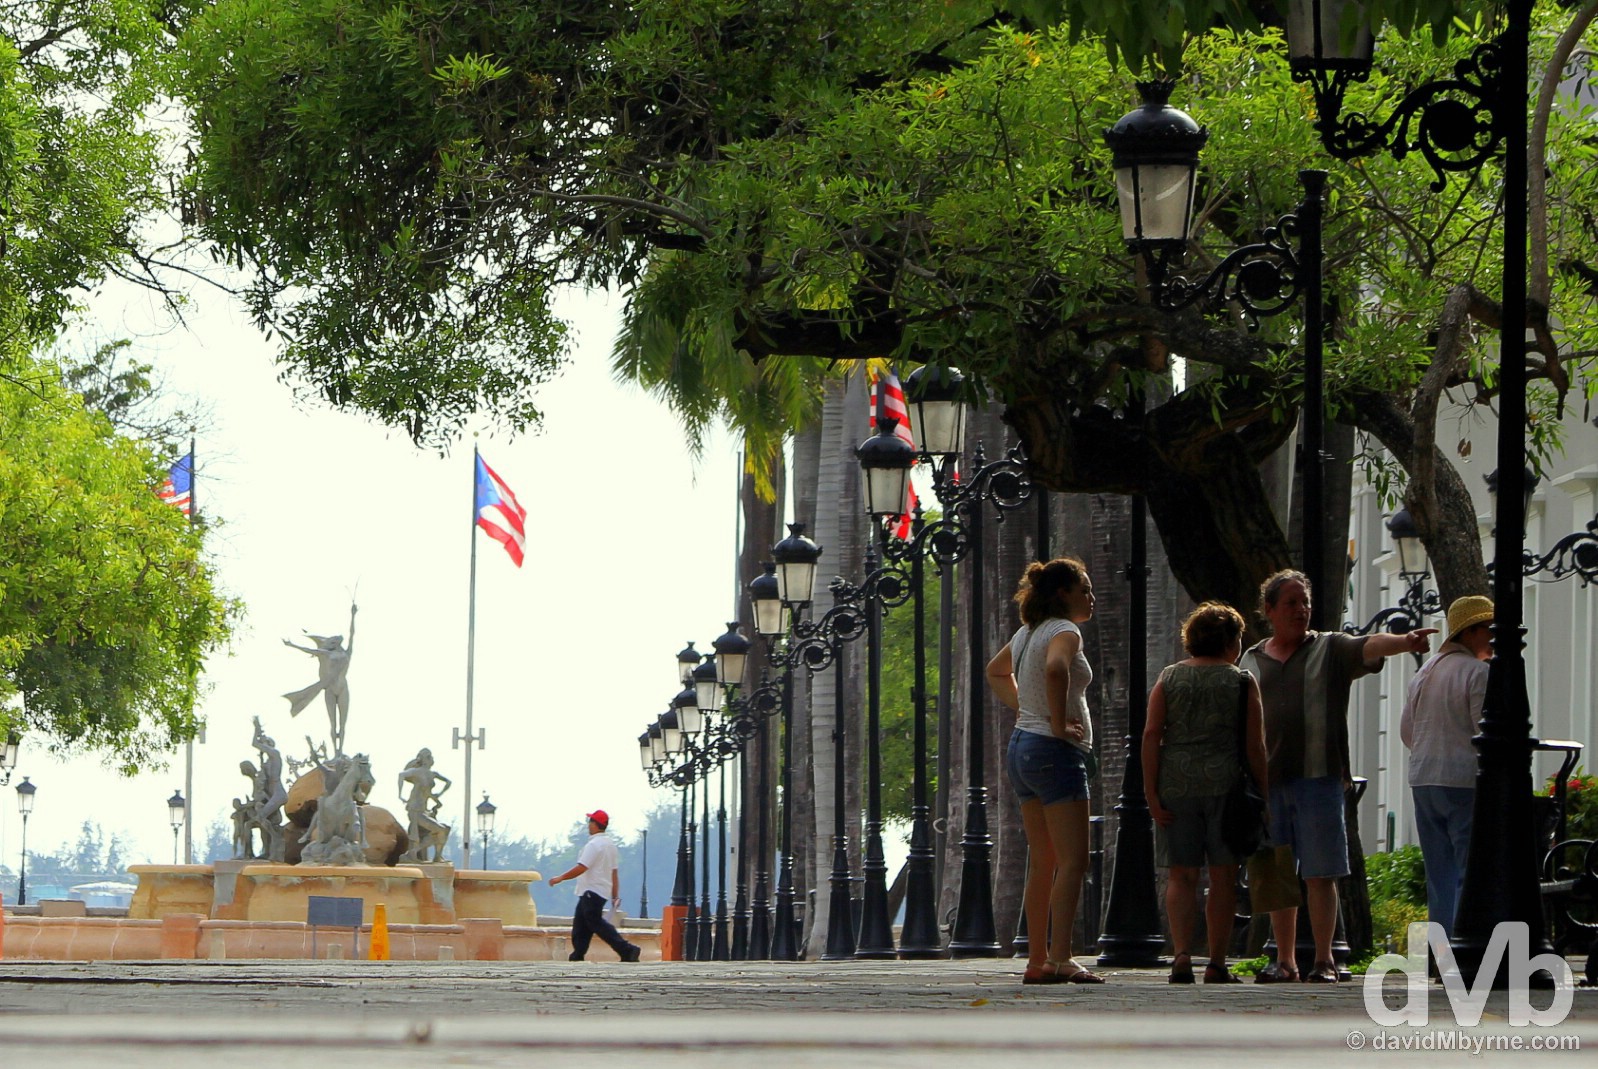 Paseo de la Princesa in Old San Juan, Puerto Rico, Greater Antilles. June 2, 2015. 